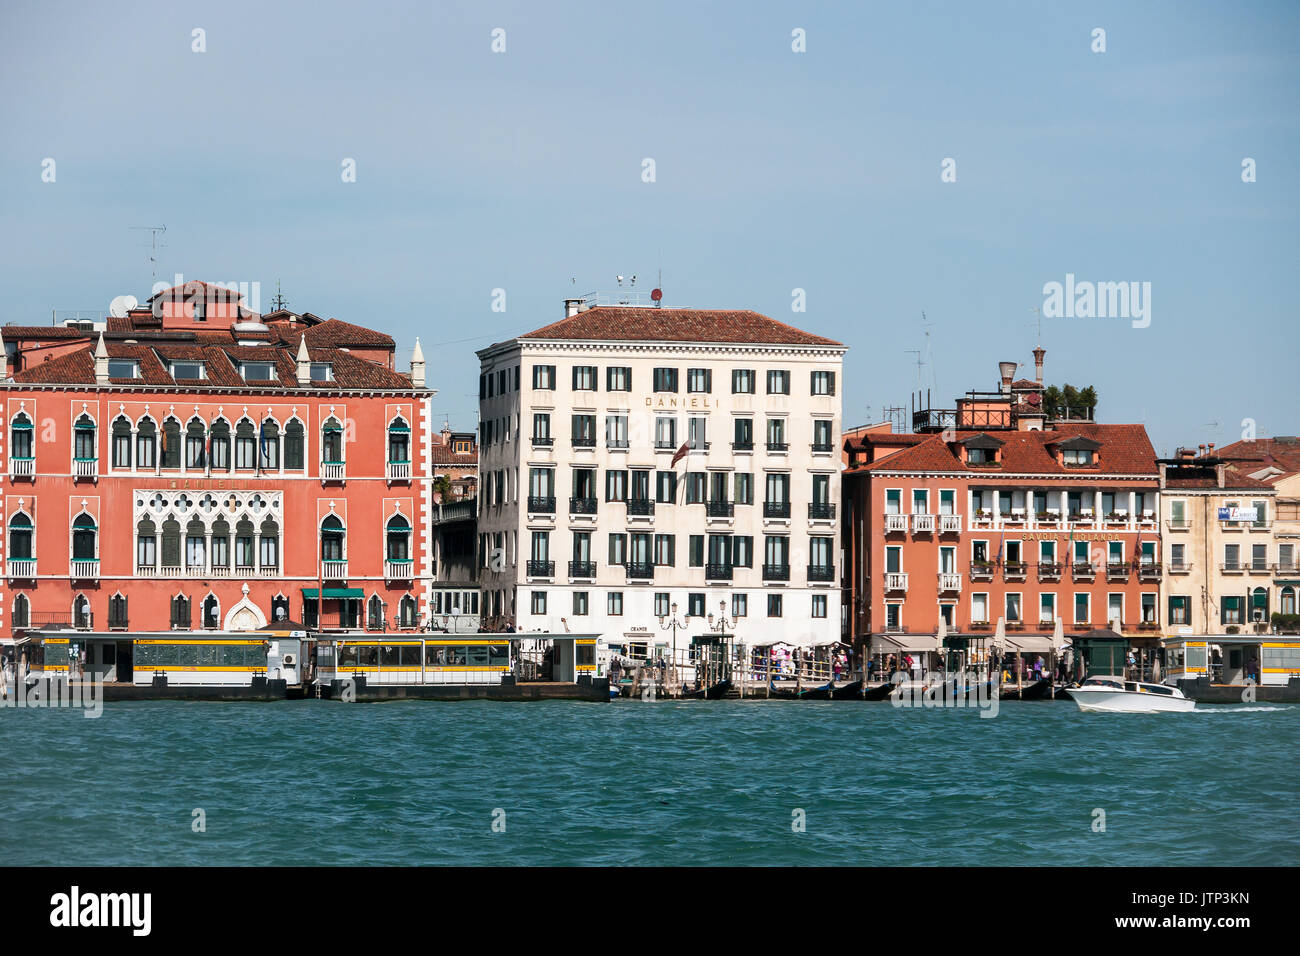 Klassische venezianische Architektur entlang der Uferpromenade günstig mit Touristen Boote und Gondeln, in Venedig, Italien Stockfoto